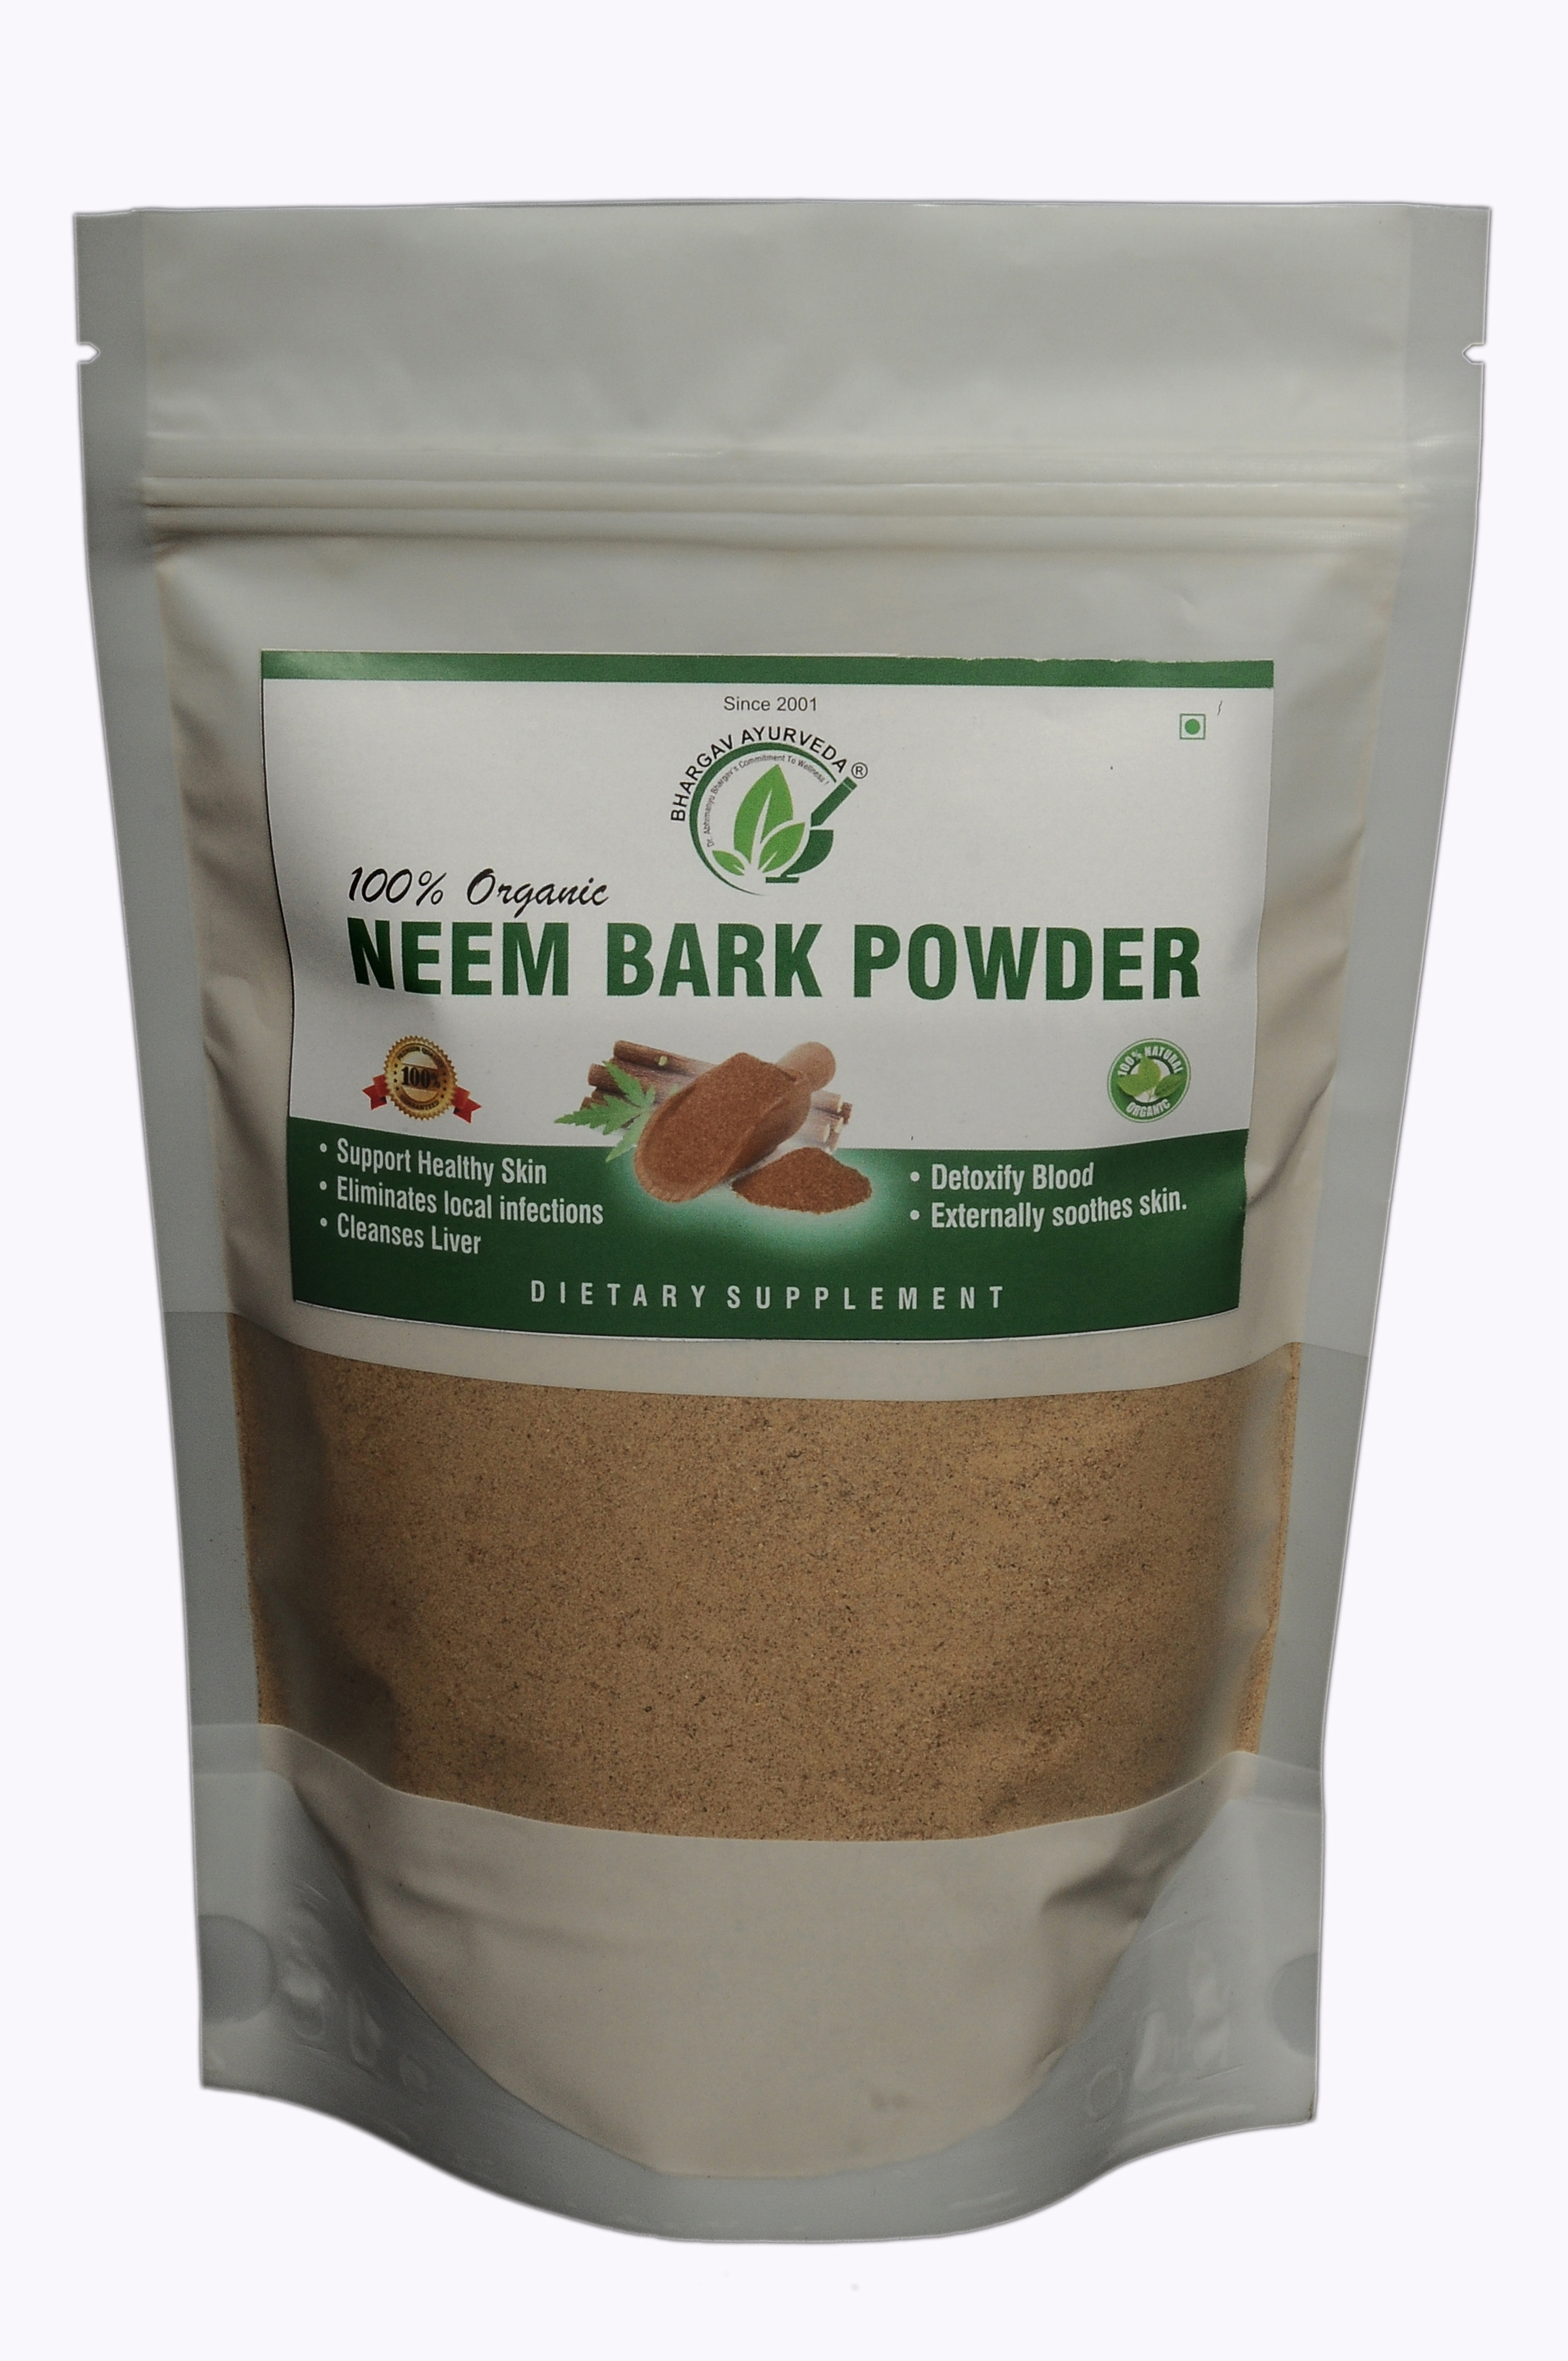 Buy Dr. Bhargav's Neem Bark Powder- 100gms at Best Price Online